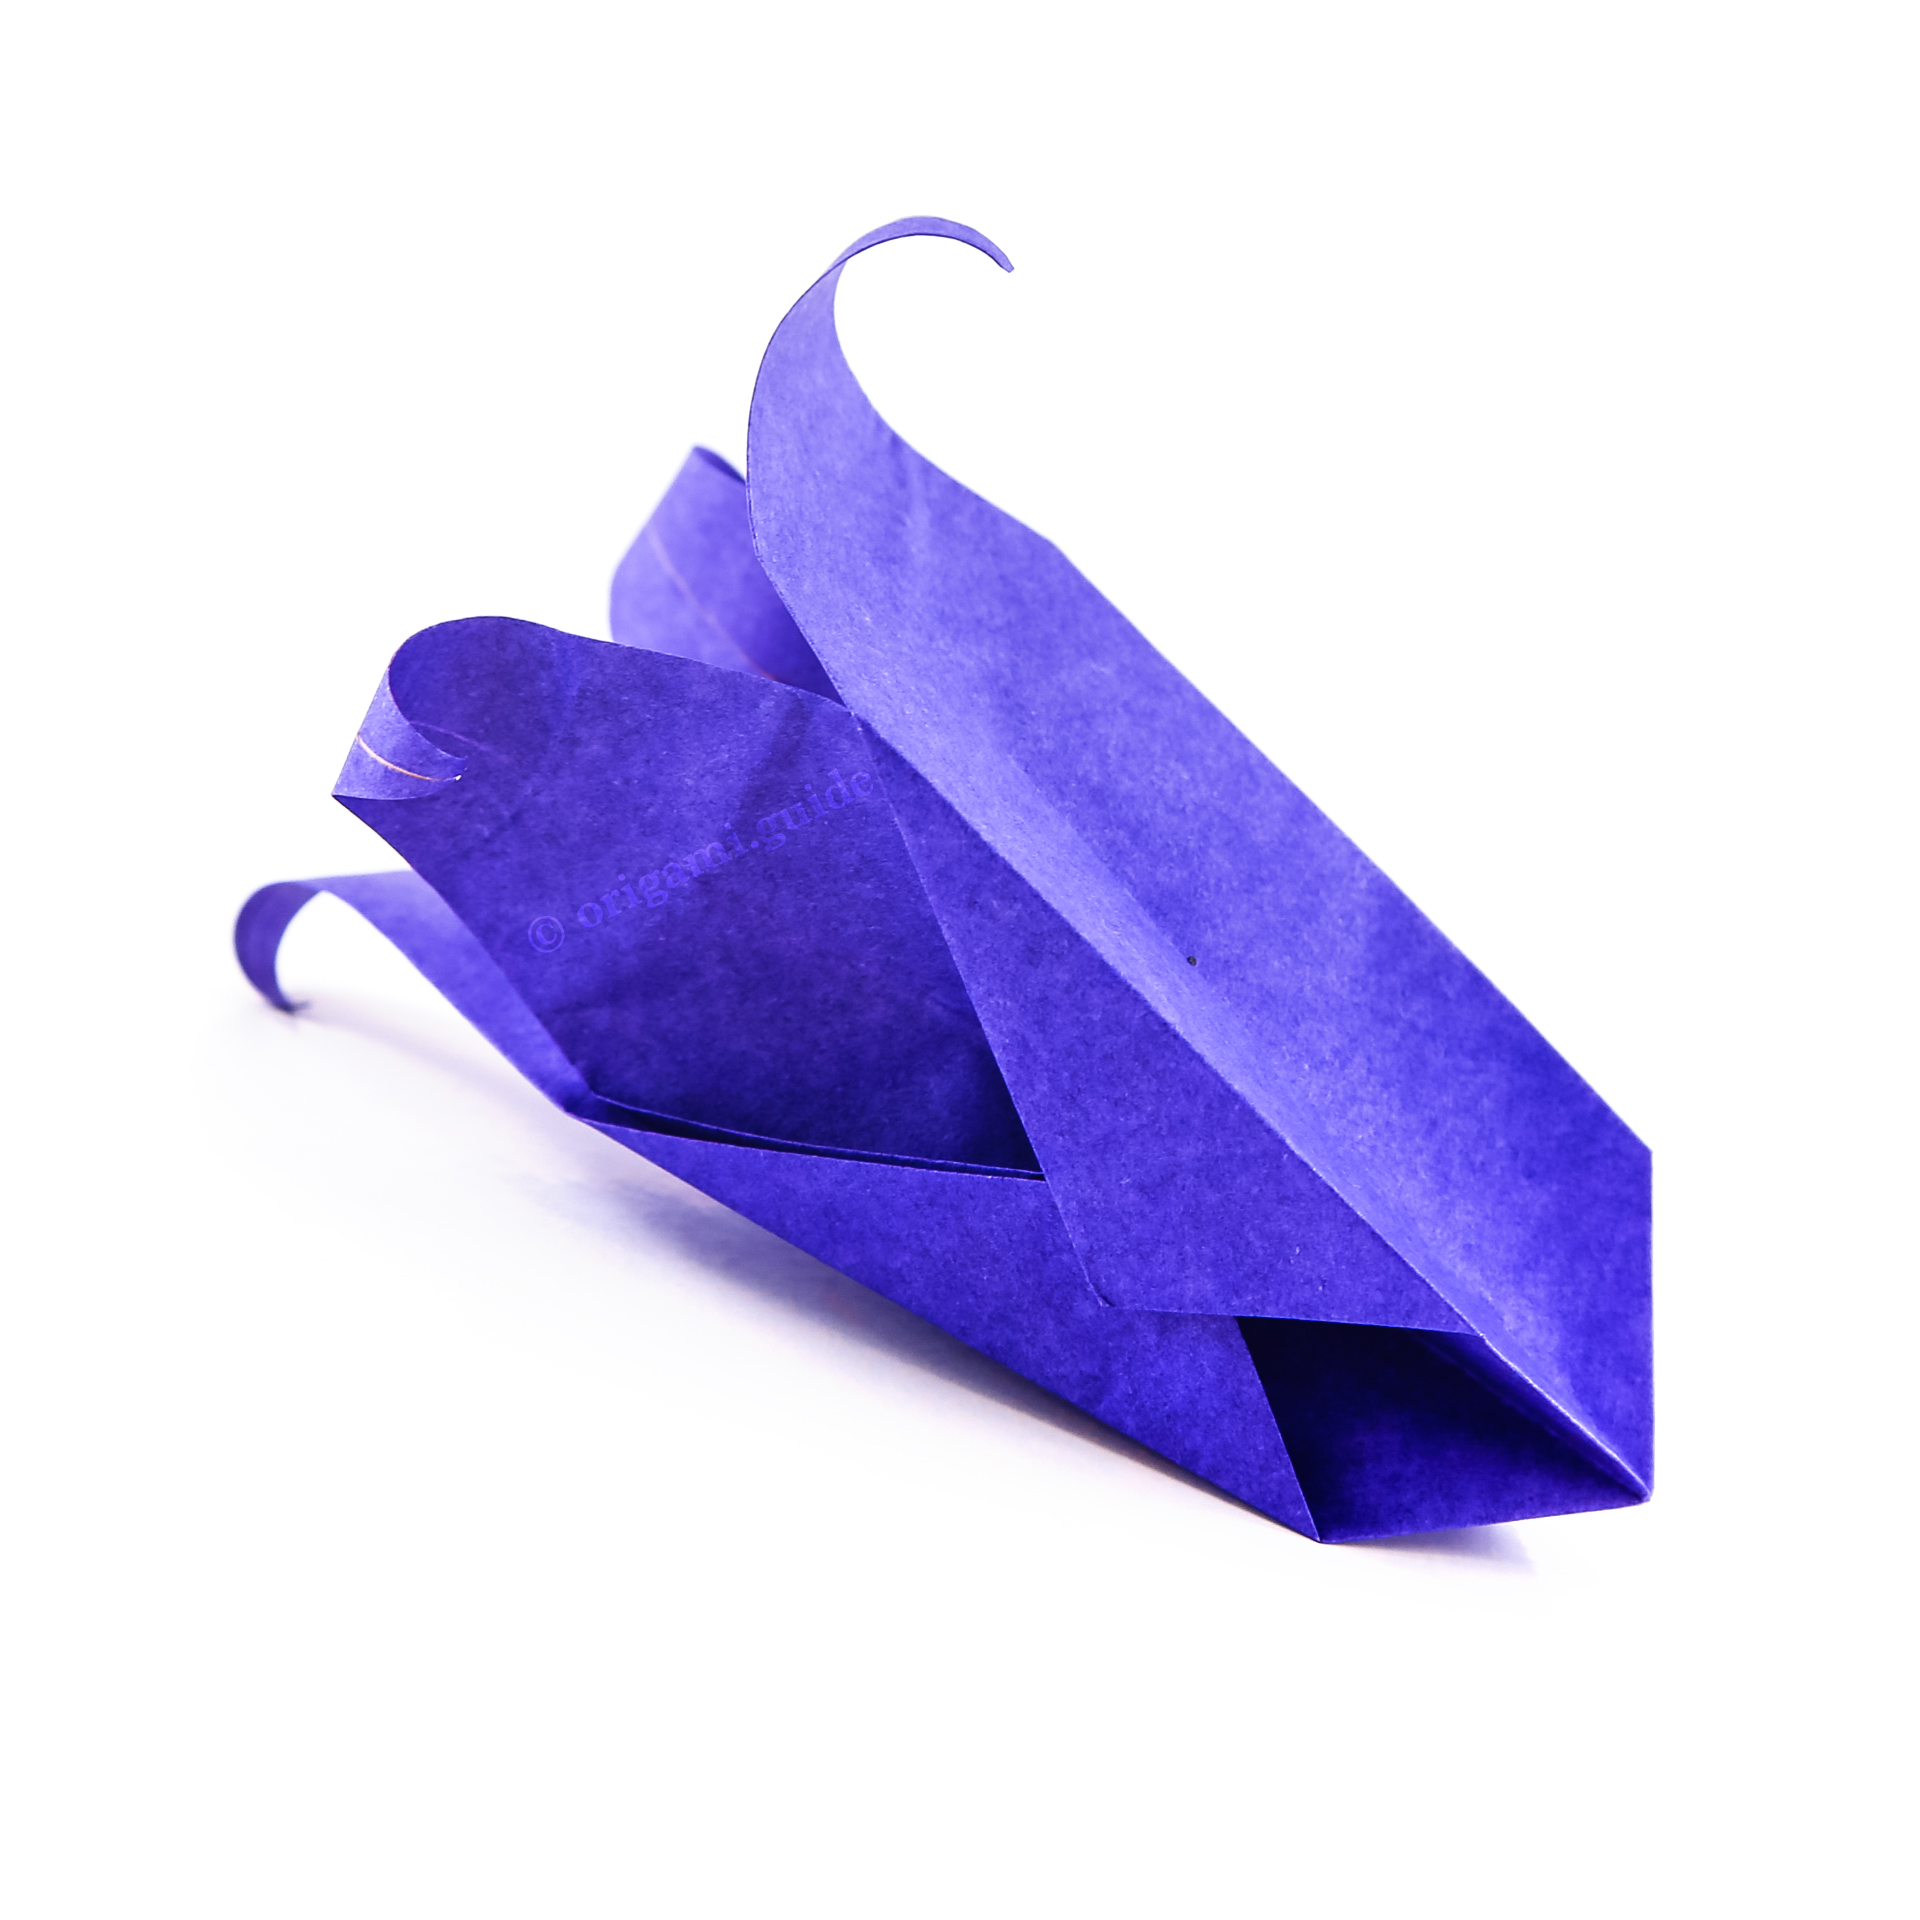 https://origami.guide/wp-content/uploads/2023/01/origami-bluebell-flower-tutorial-00.jpg